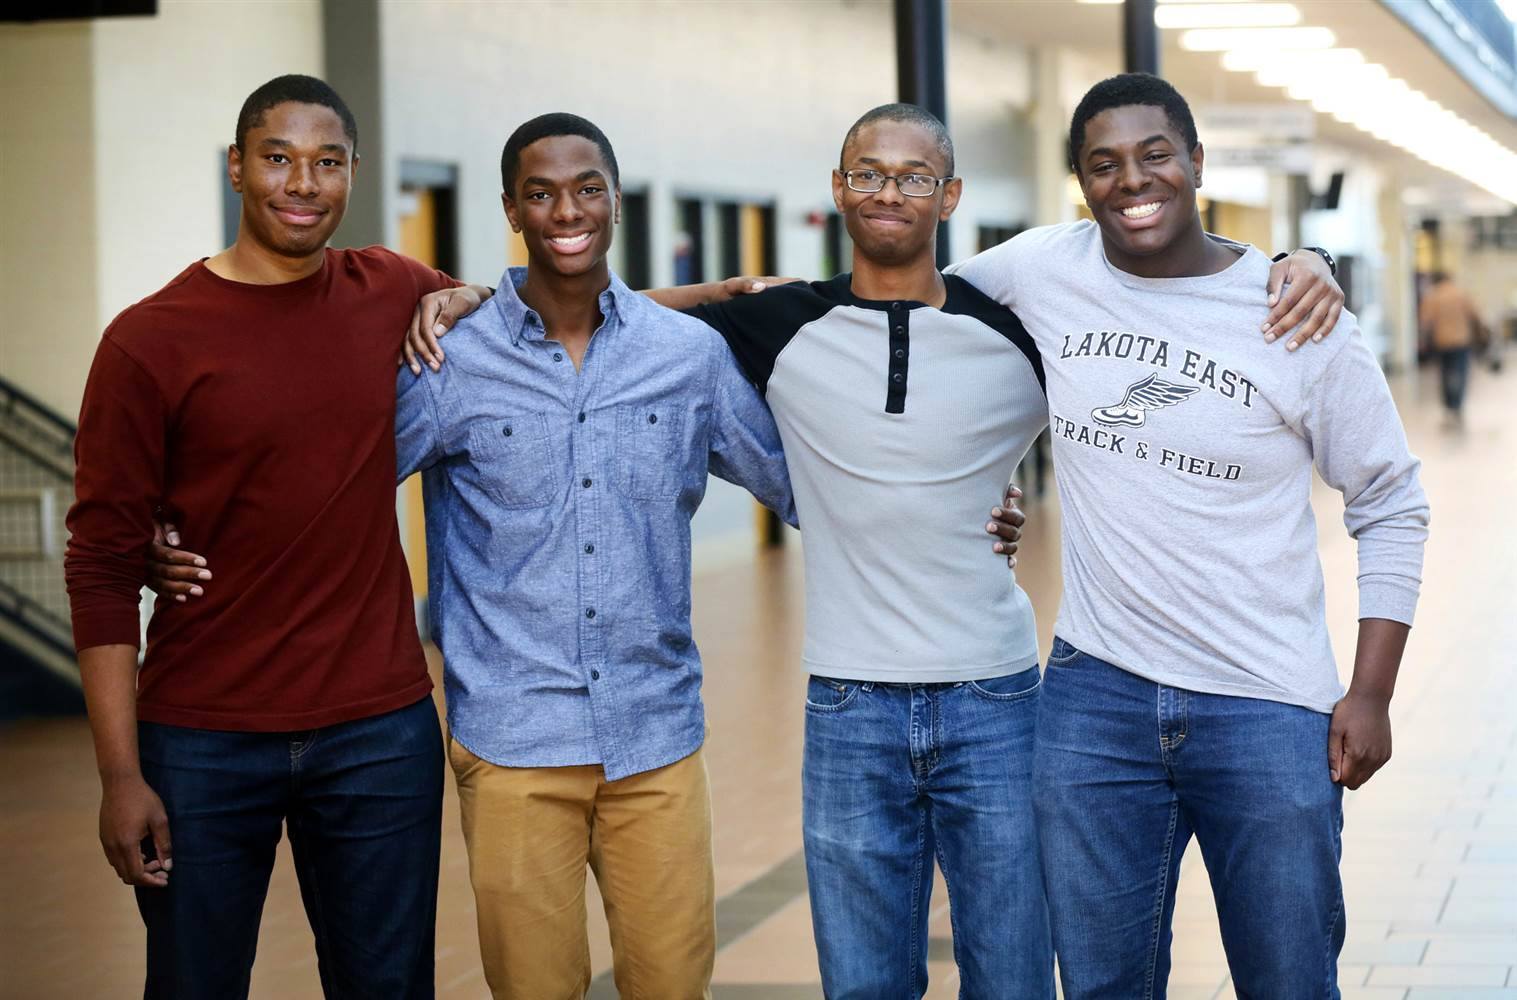 Ohio-Based Quadruplets Graduate Yale University Together